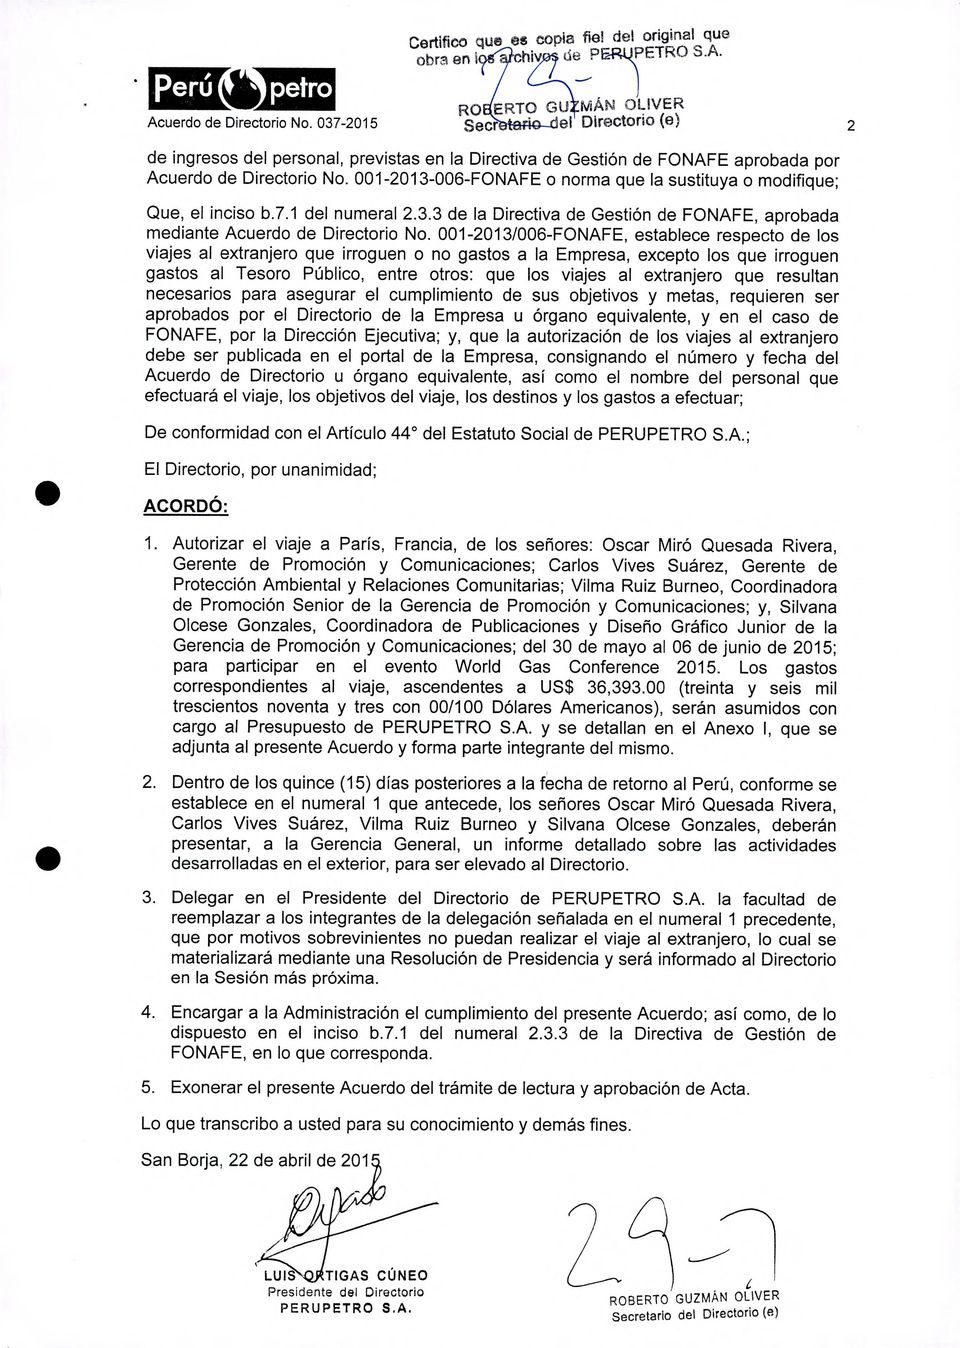 001-2013-006-FONAFE o norma que la sustituya o modifique; Que, el inciso b.7.1 del numeral 2.3.3 de la Directiva de Gestión de FONAFE, aprobada mediante Acuerdo de Directorio No.